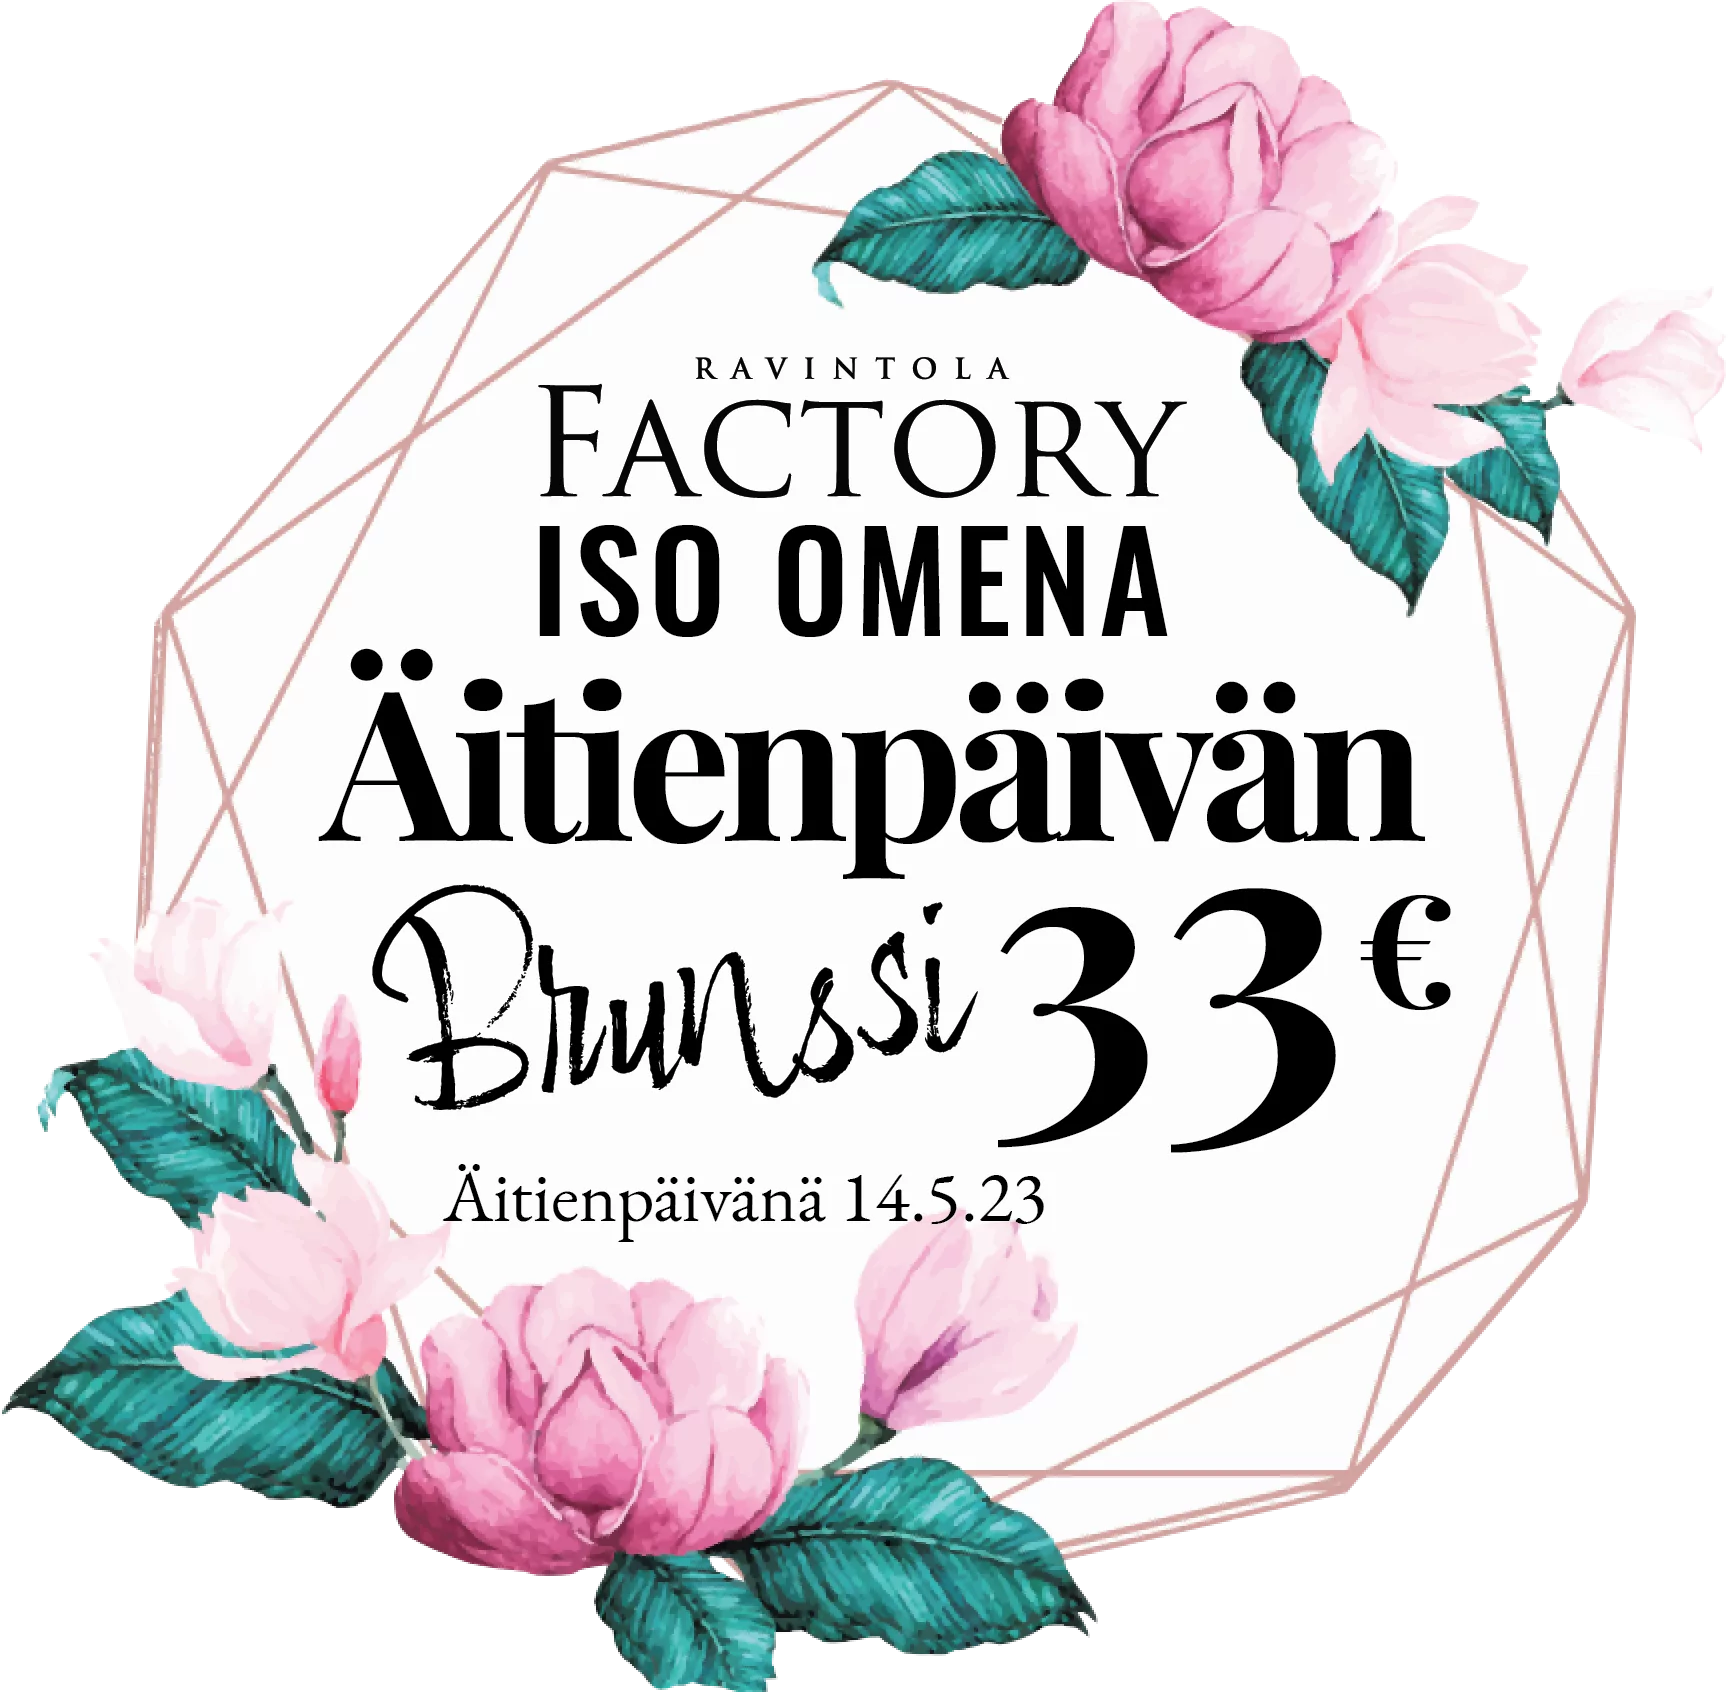 Factory Iso Omena äitienpäivän brunssi - Ravintola Factory